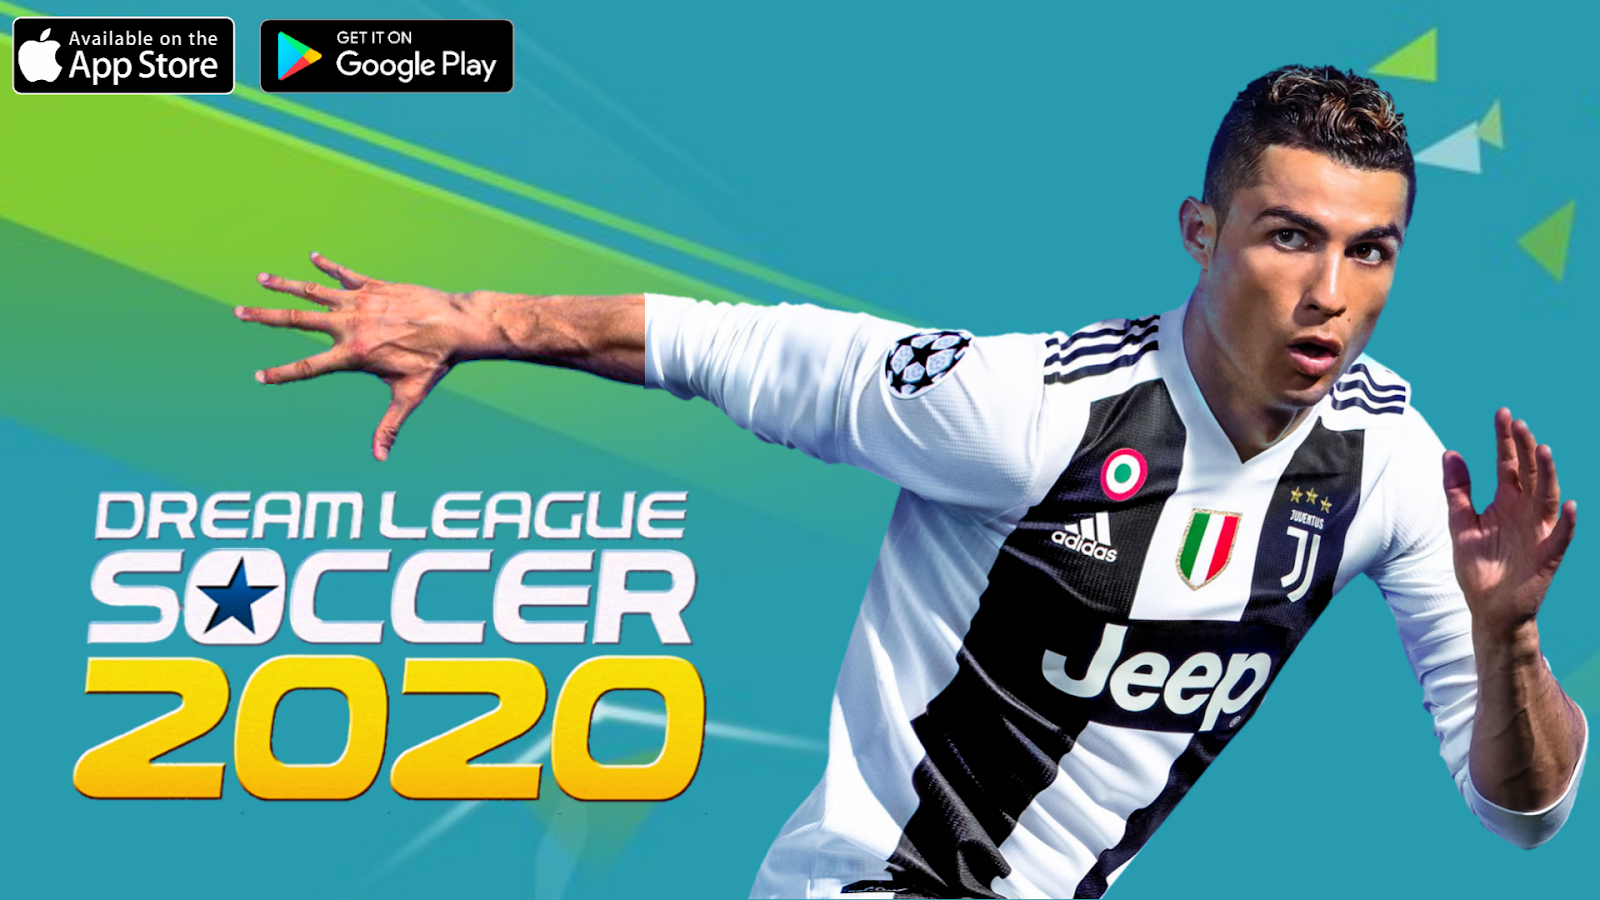 Download Dream League Soccer 2020